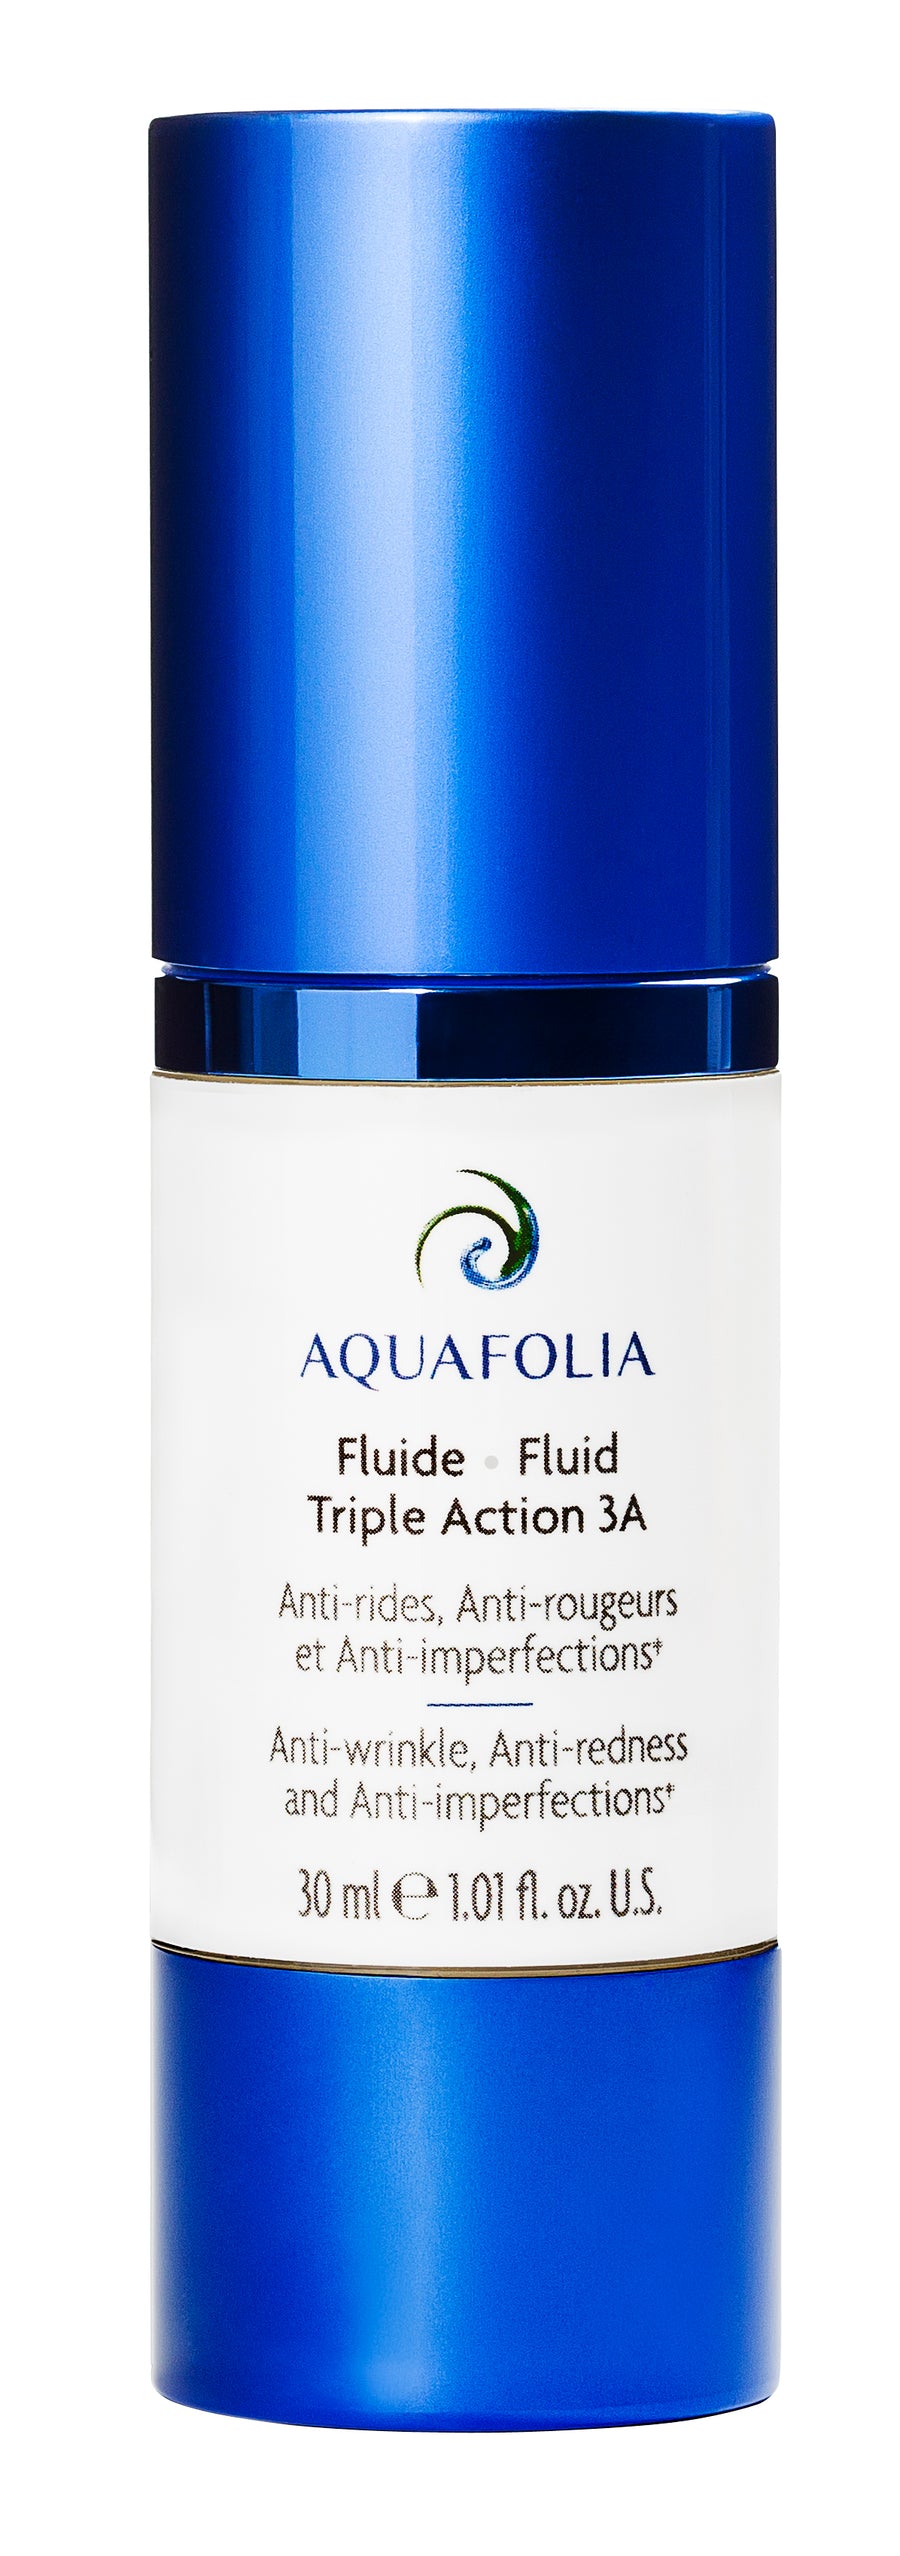 Aquafolia- Triple Action 3A Fluid- Triple Action 3A Concept